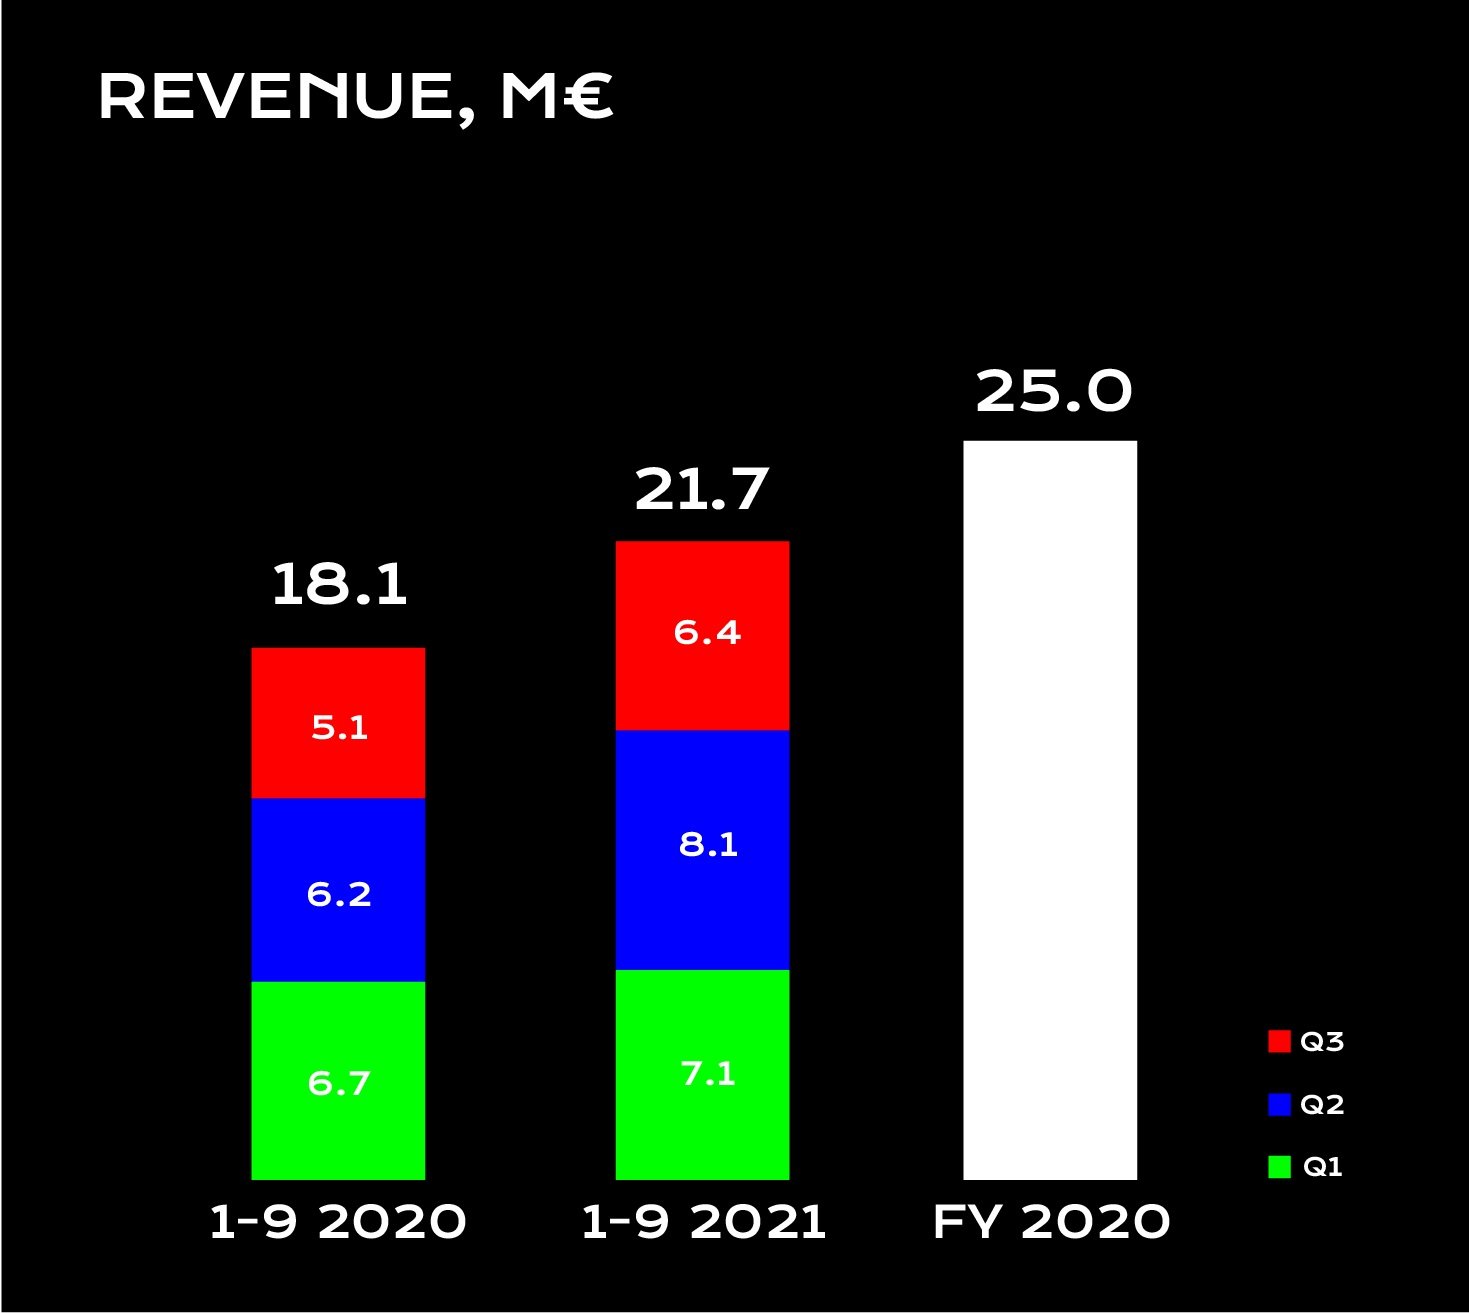 Revenue 1-9 2021